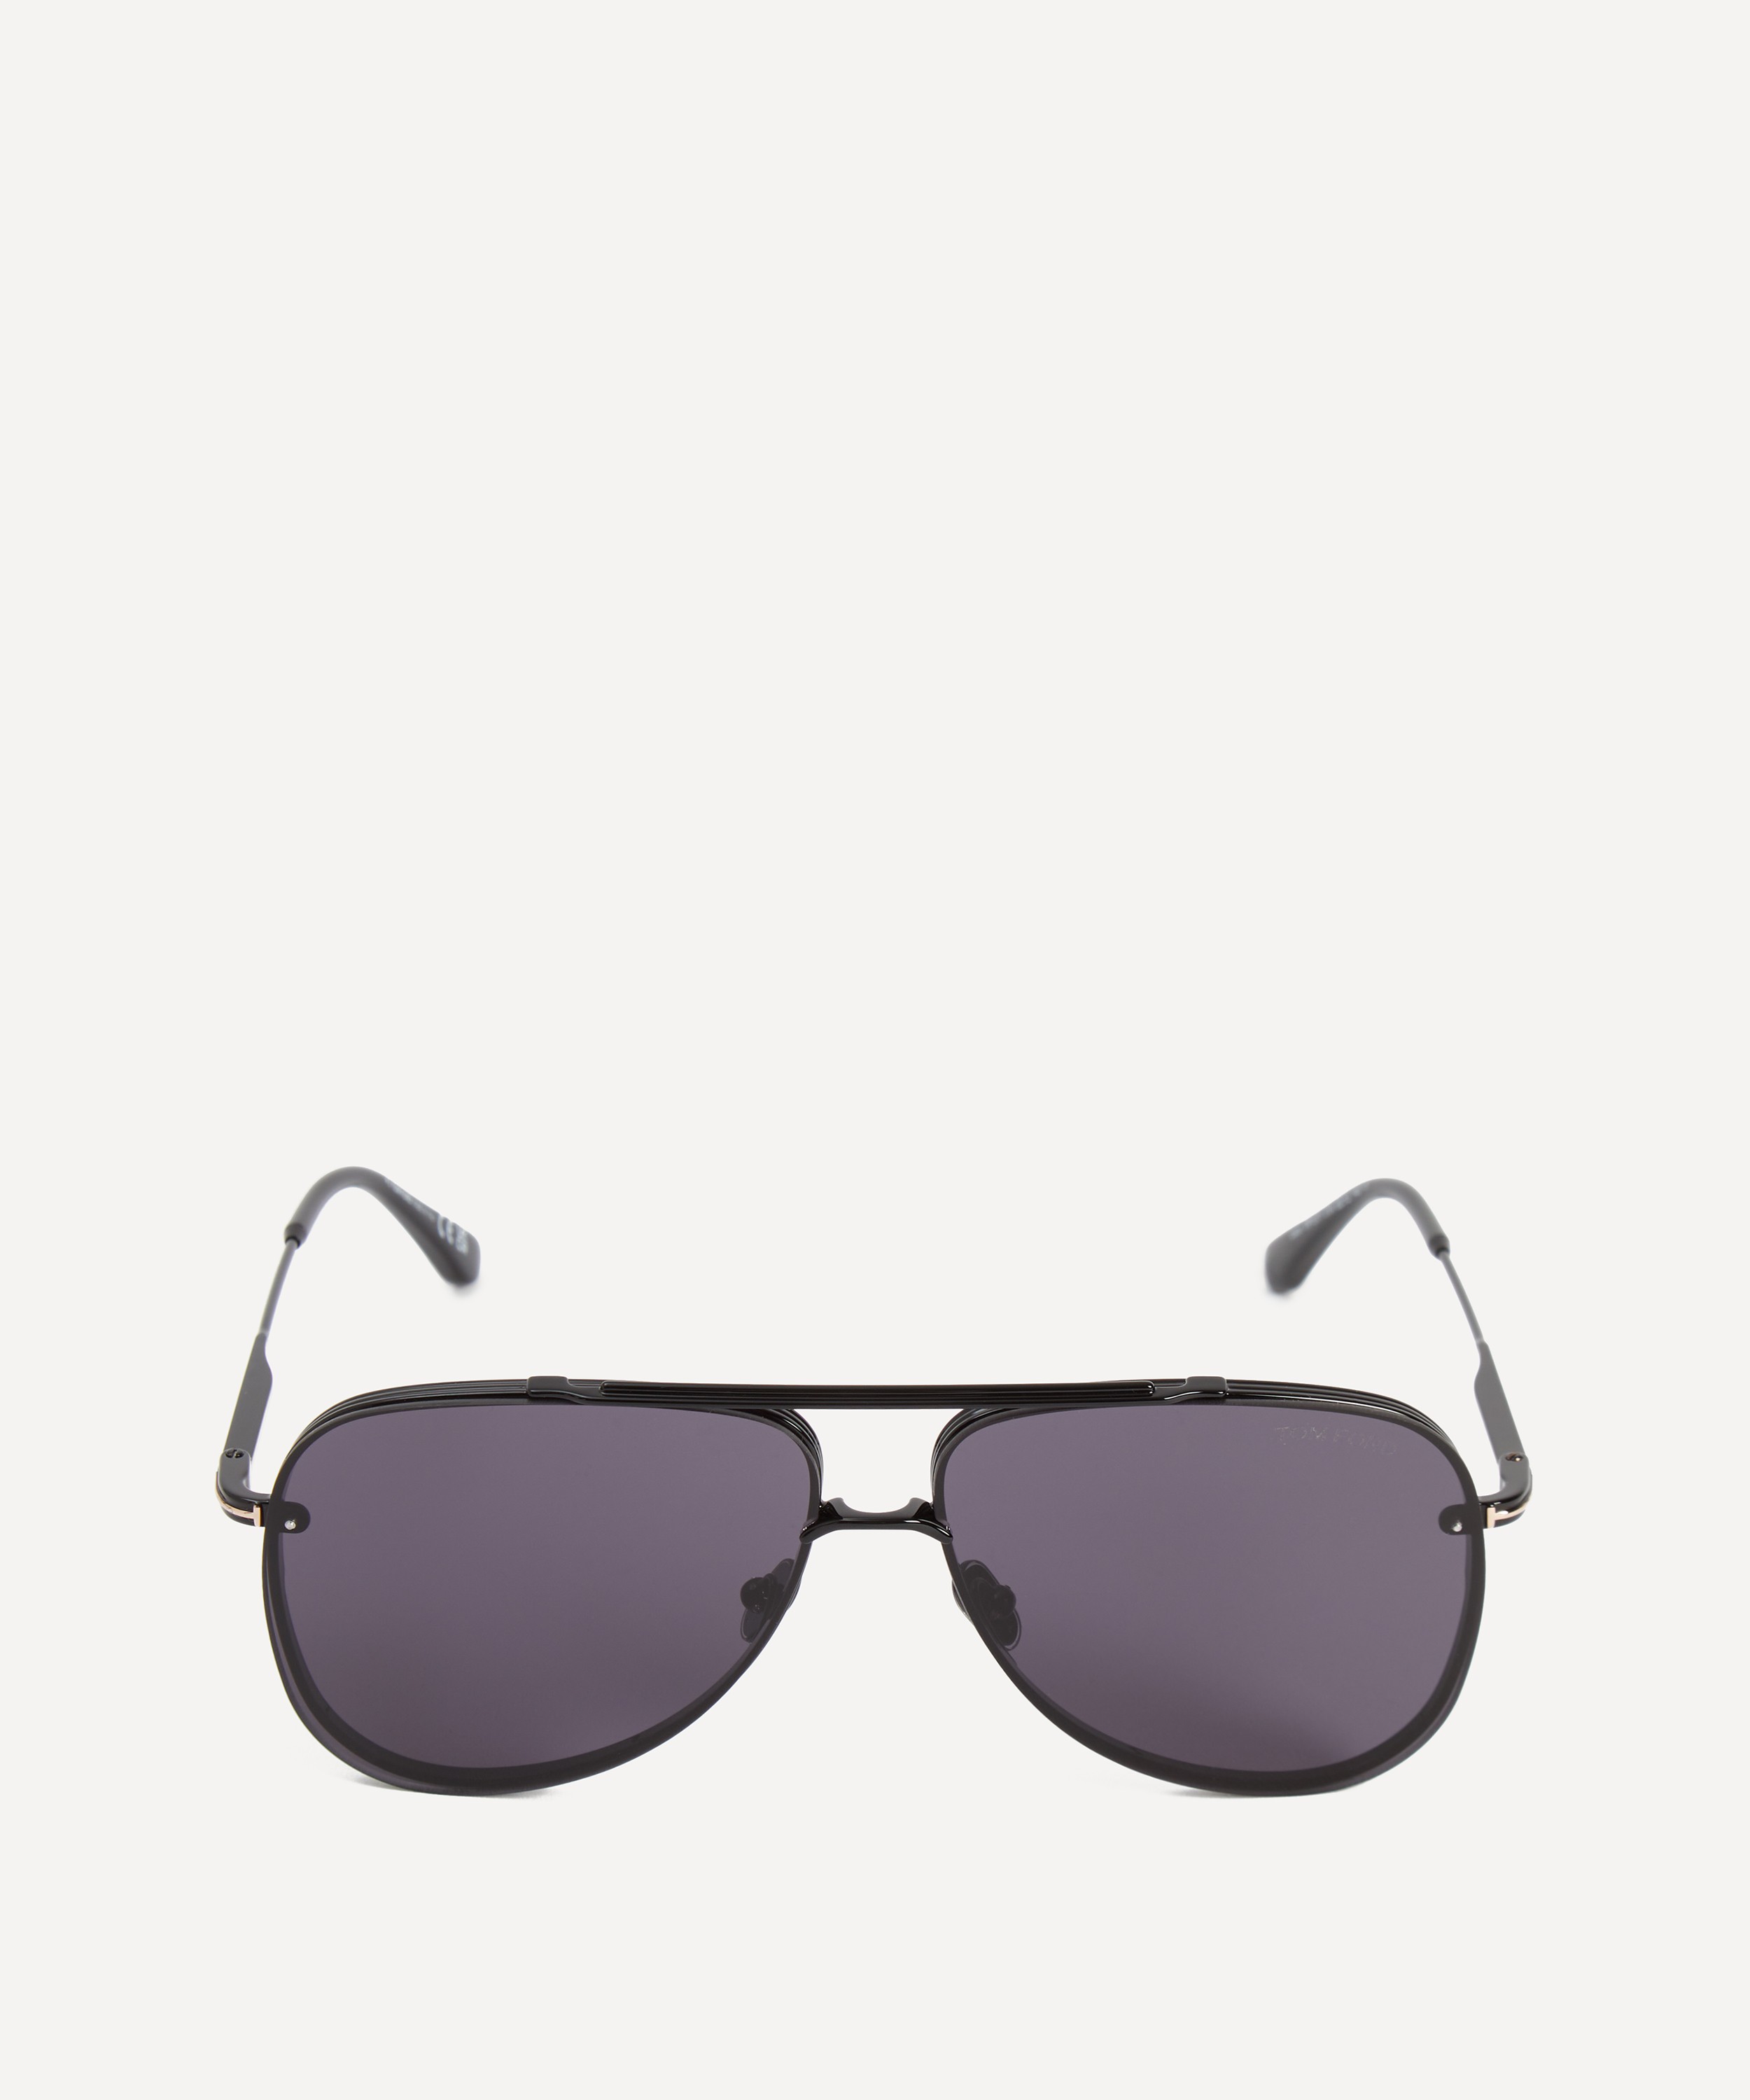 Tom Ford - Aviator Sunglasses